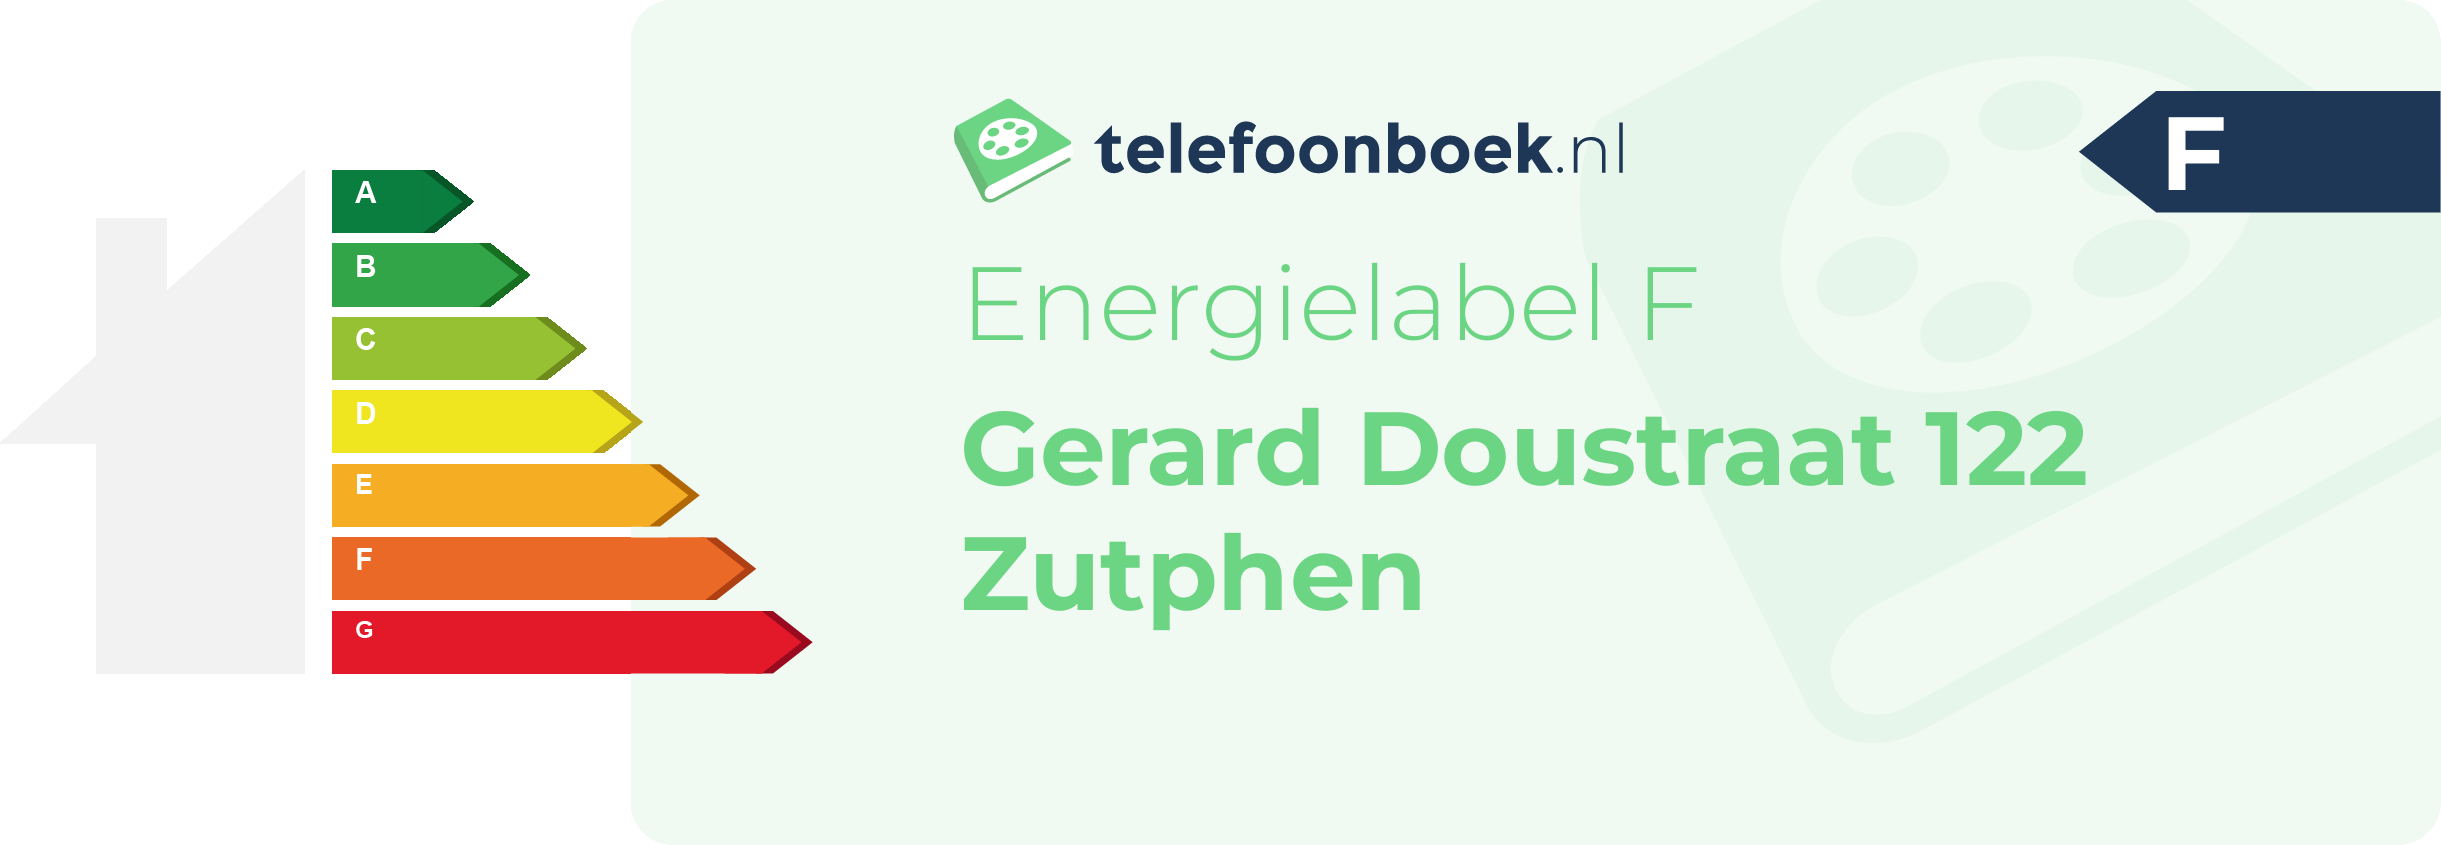 Energielabel Gerard Doustraat 122 Zutphen